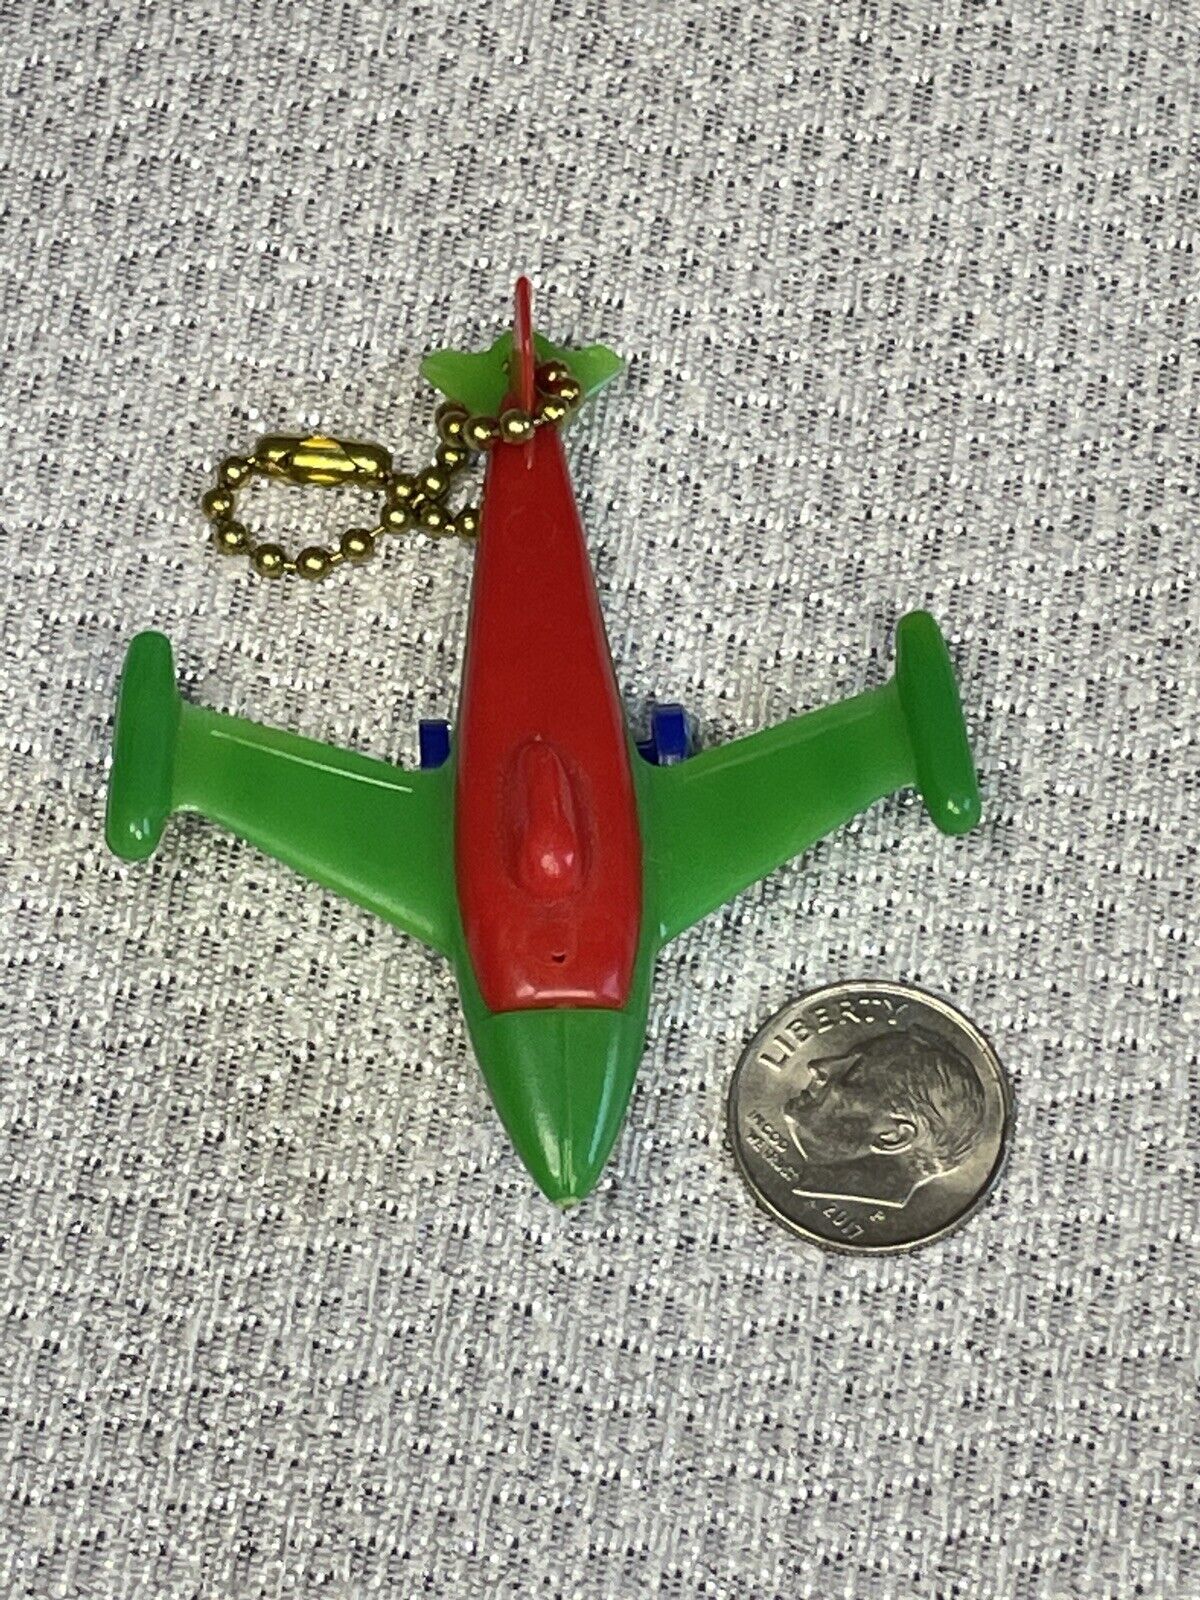 Vintage Toy Rocket or Jet Plane 5 Color Plastic Puzzle Key Chain